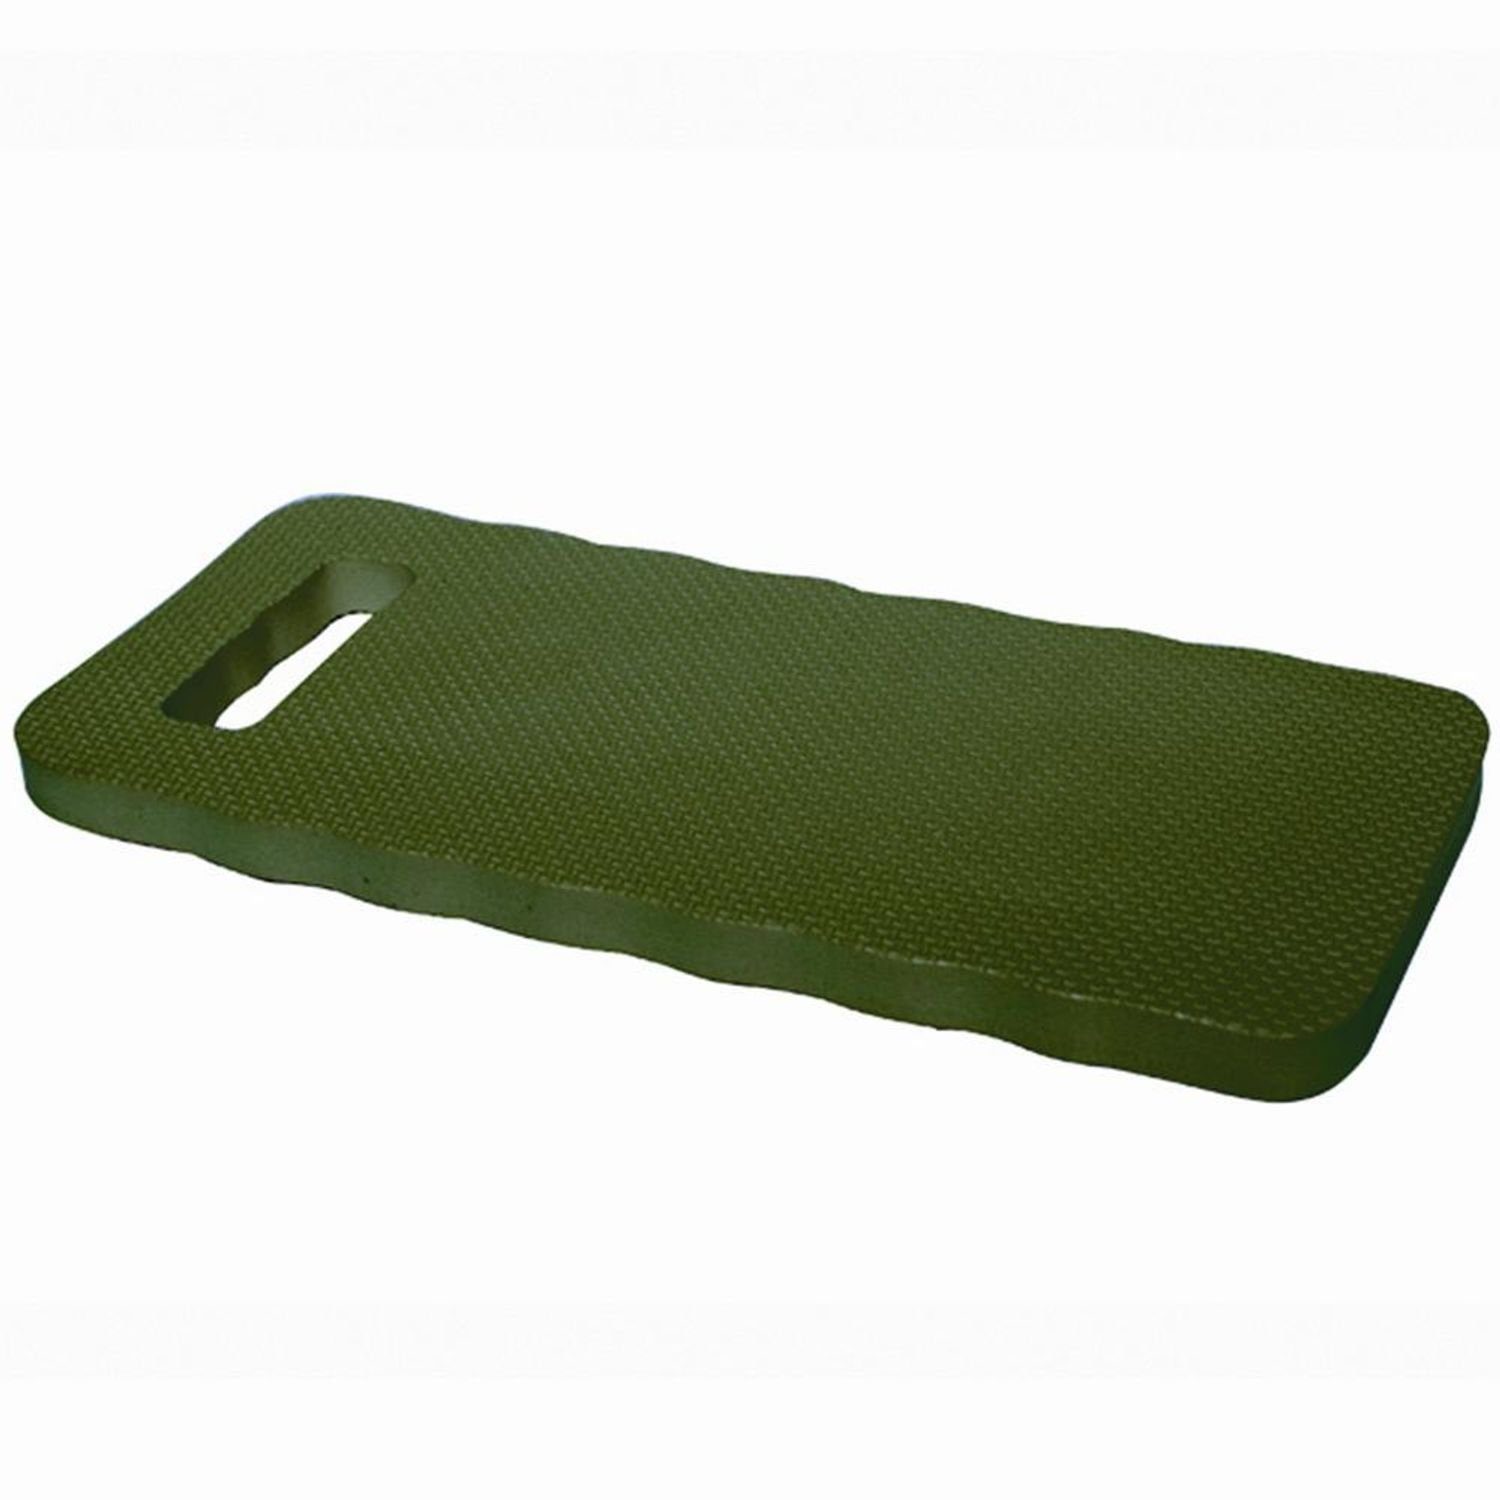 Farbe: grün Kniekissen Maße: Auflagekissen 39x17x1,9cm aus Garden Hartschaum, Siena